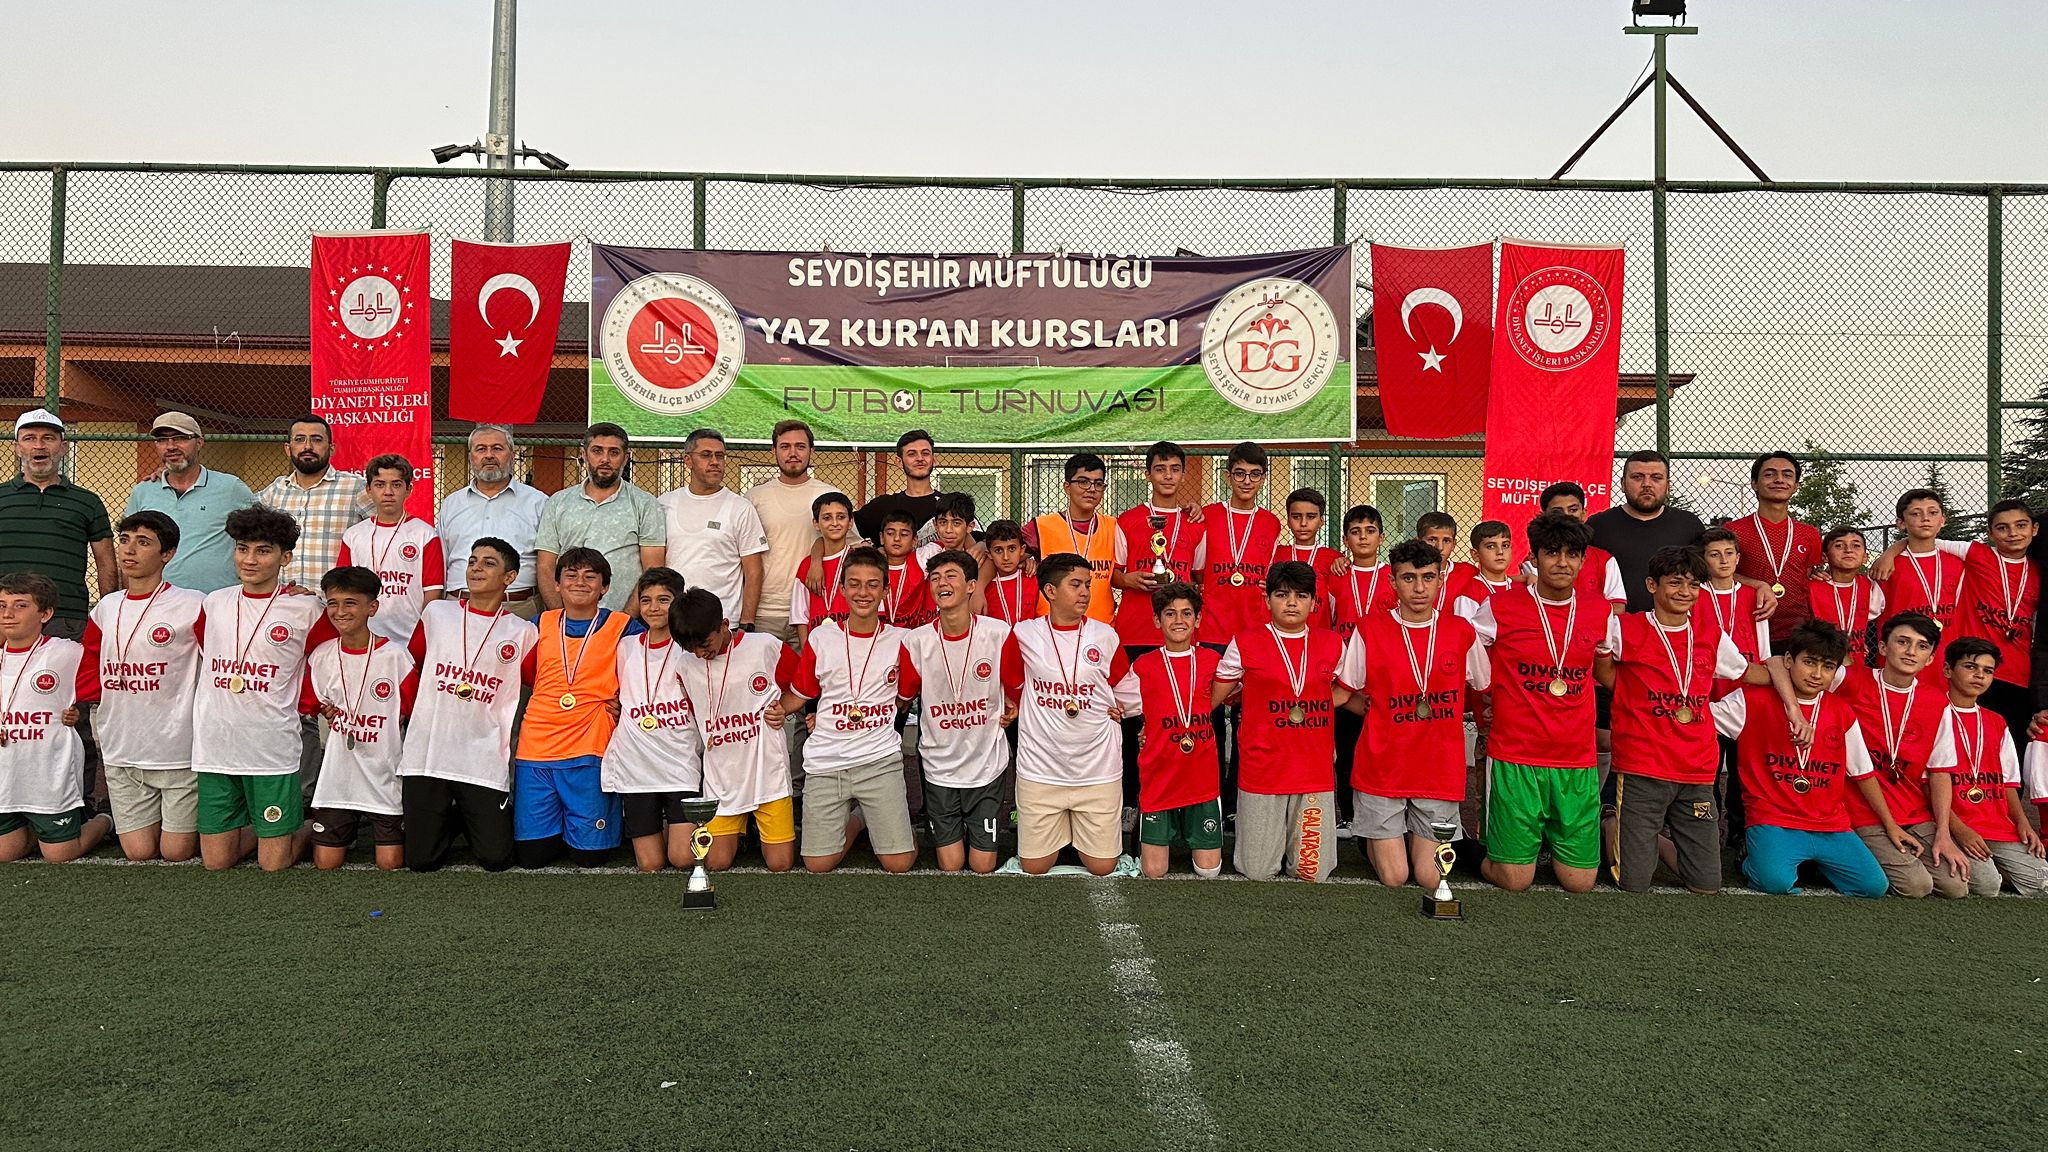 Seydişehir'de düzenlenen futbol turnuvası sona erdi